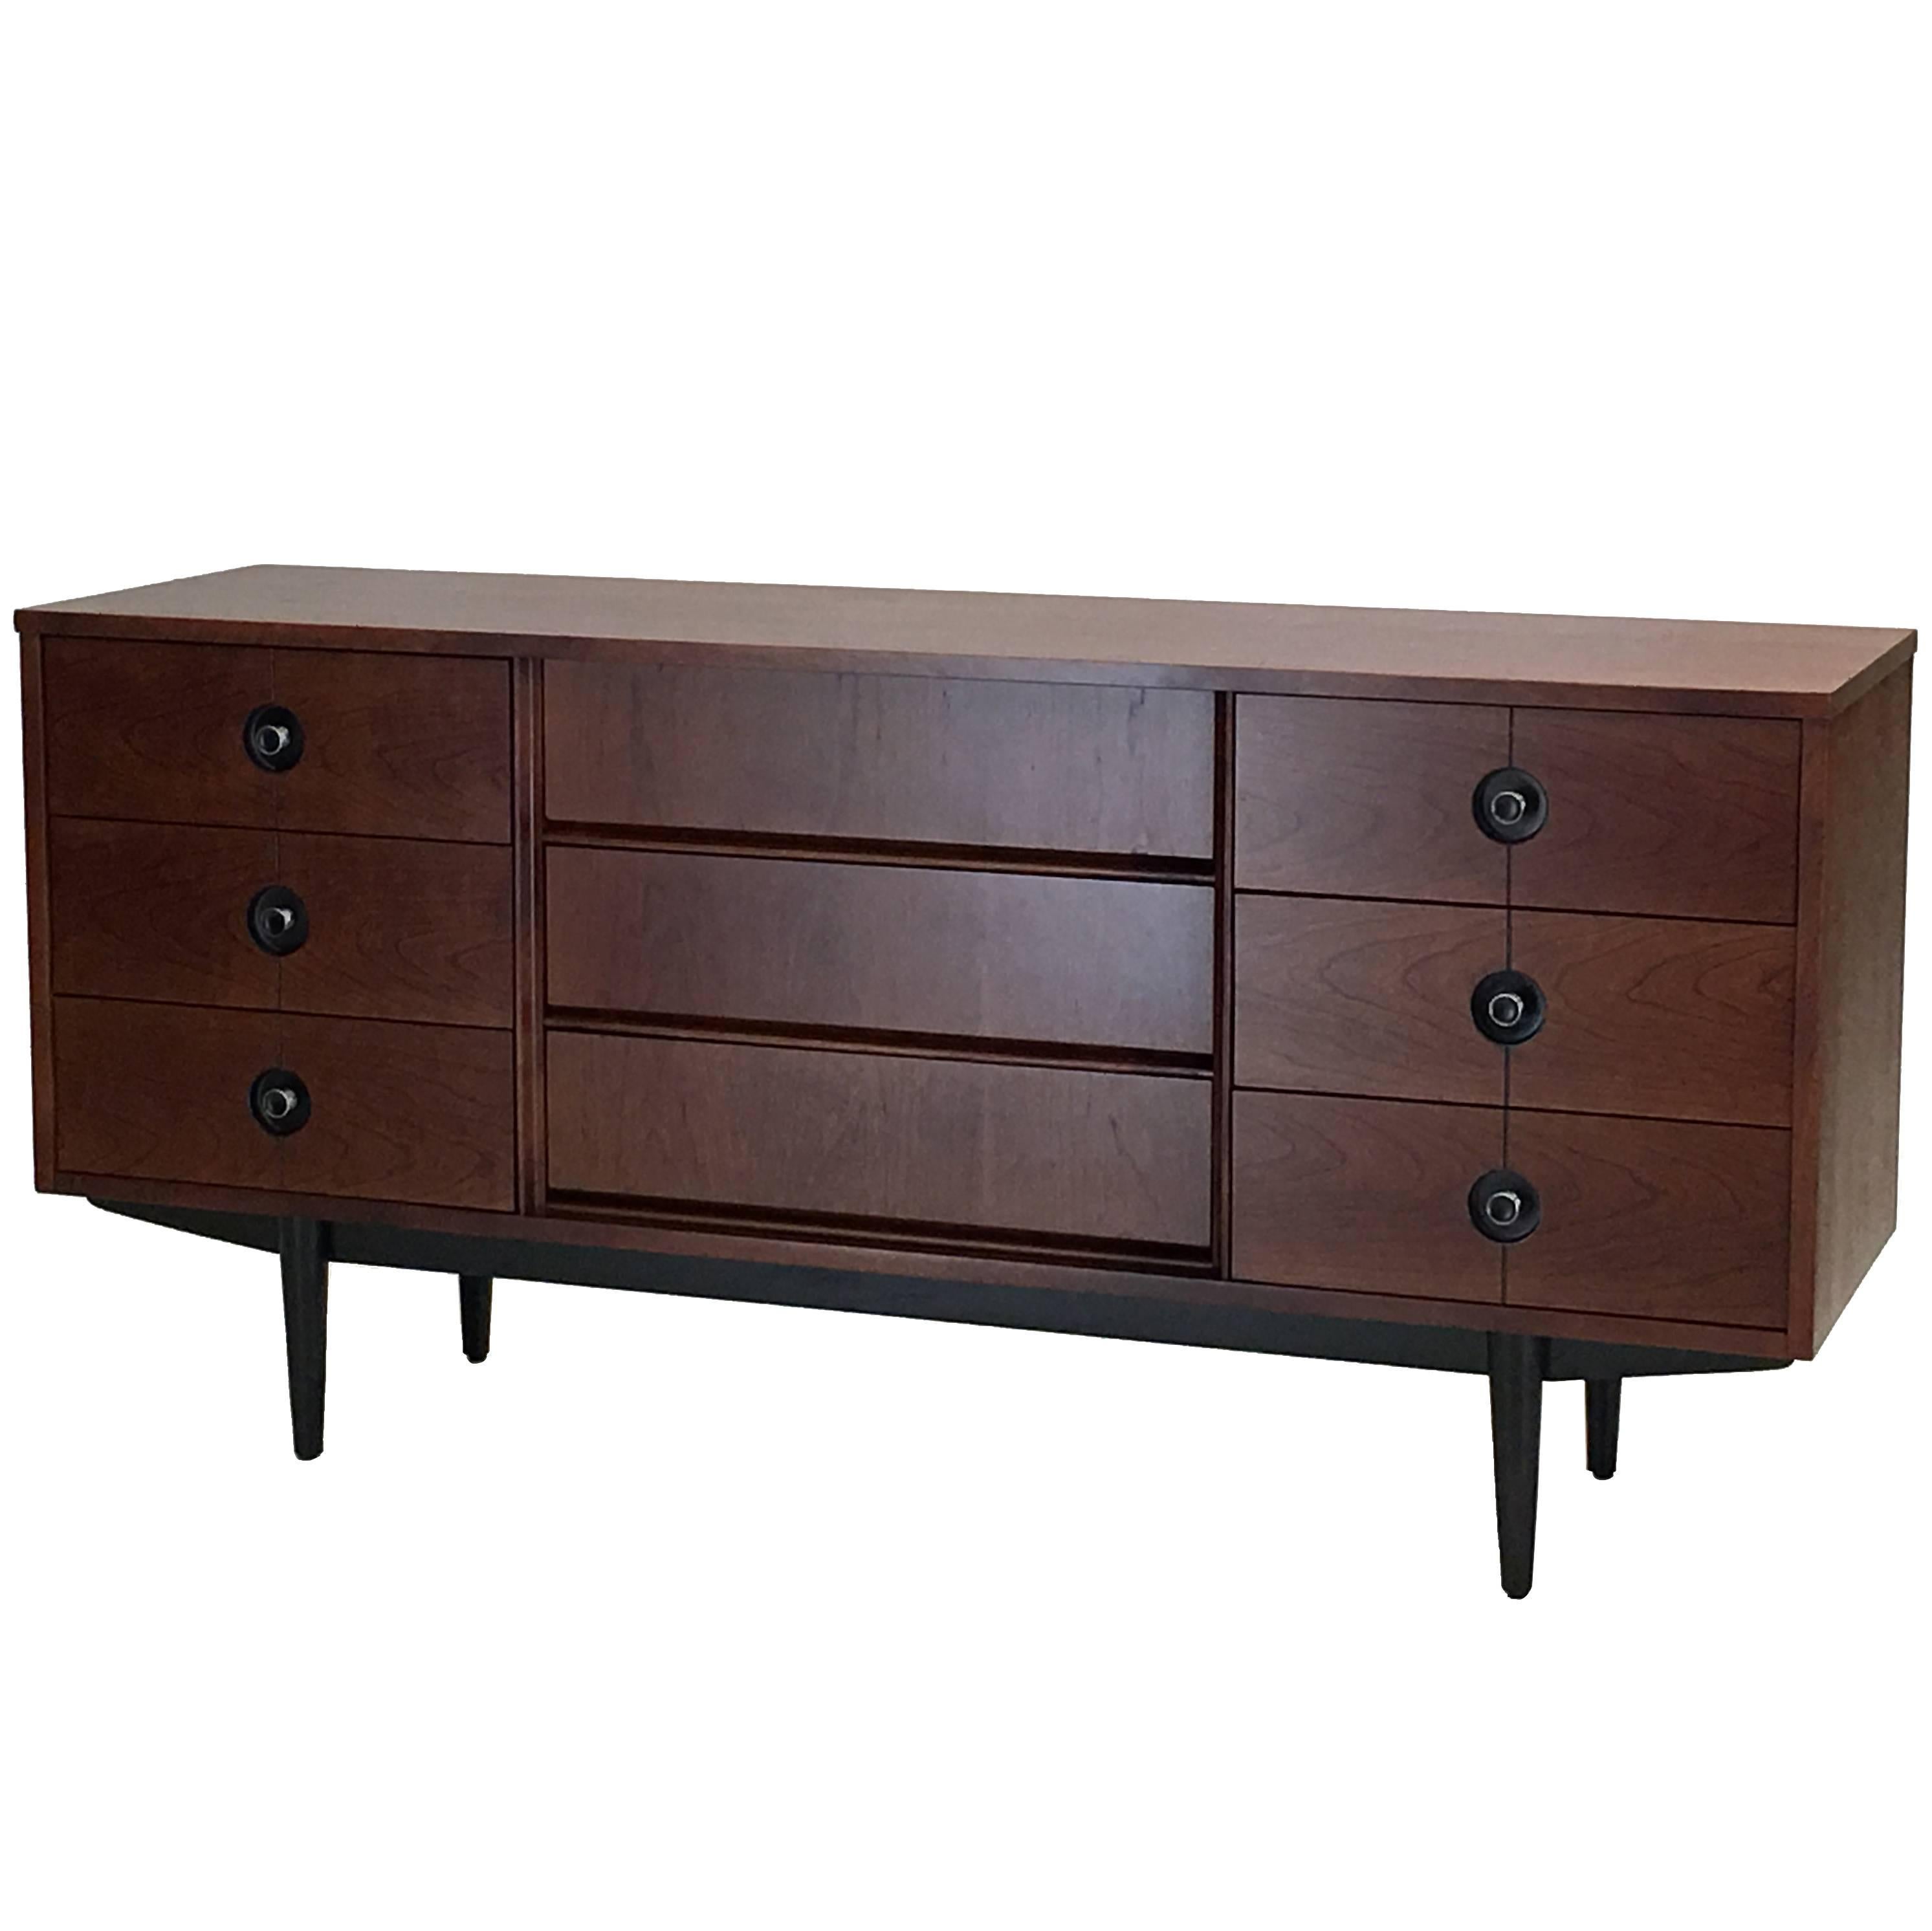 Triple Dresser by Stanley Distinctive Furniture the Finnline Series in Cherry